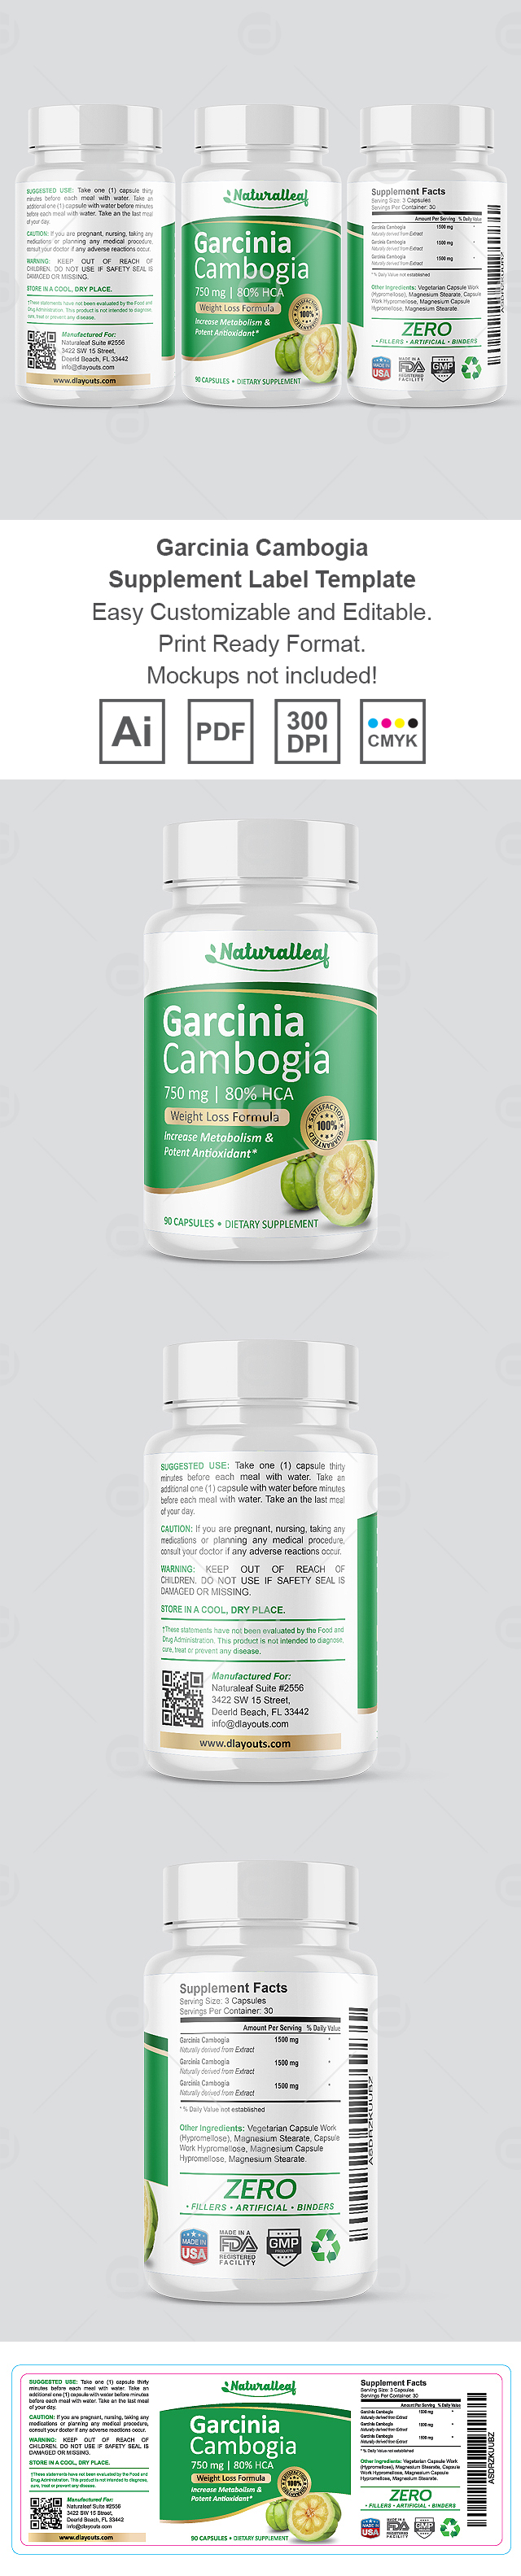 Garcinia Cambogia Supplement Label Template